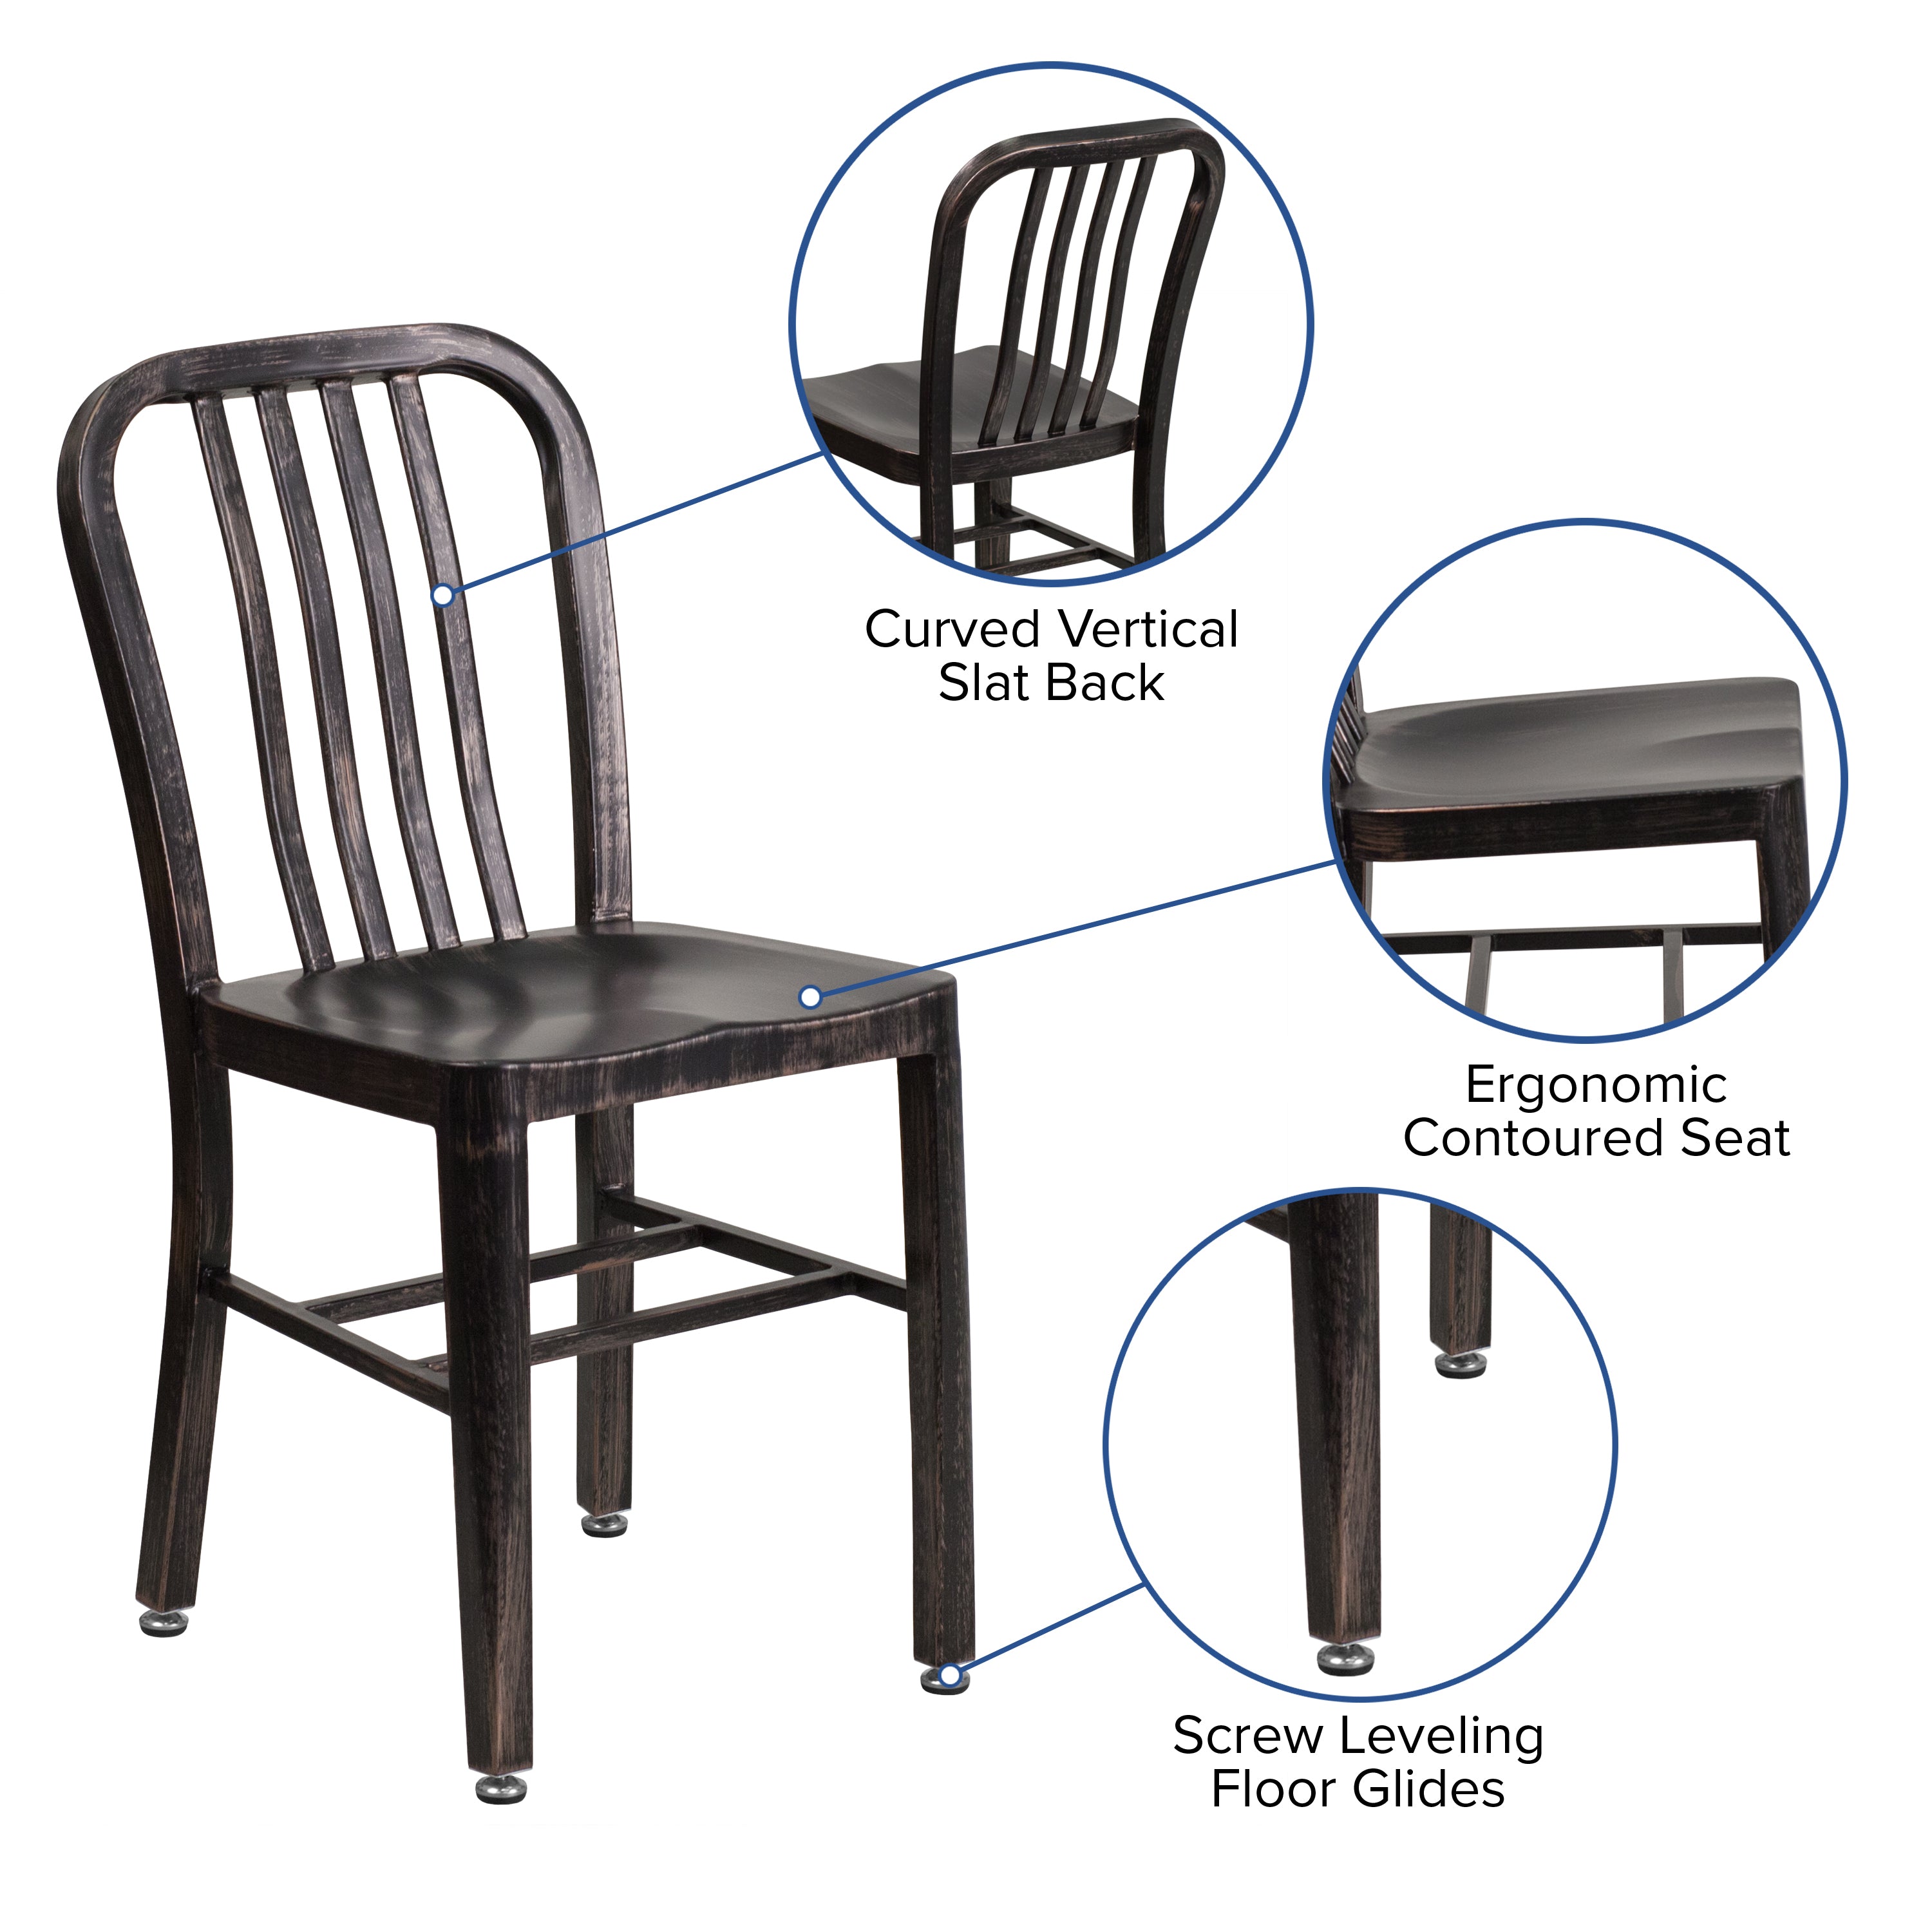 Commercial Grade Metal Indoor-Outdoor Chair-Indoor/Outdoor Chairs-Flash Furniture-Wall2Wall Furnishings